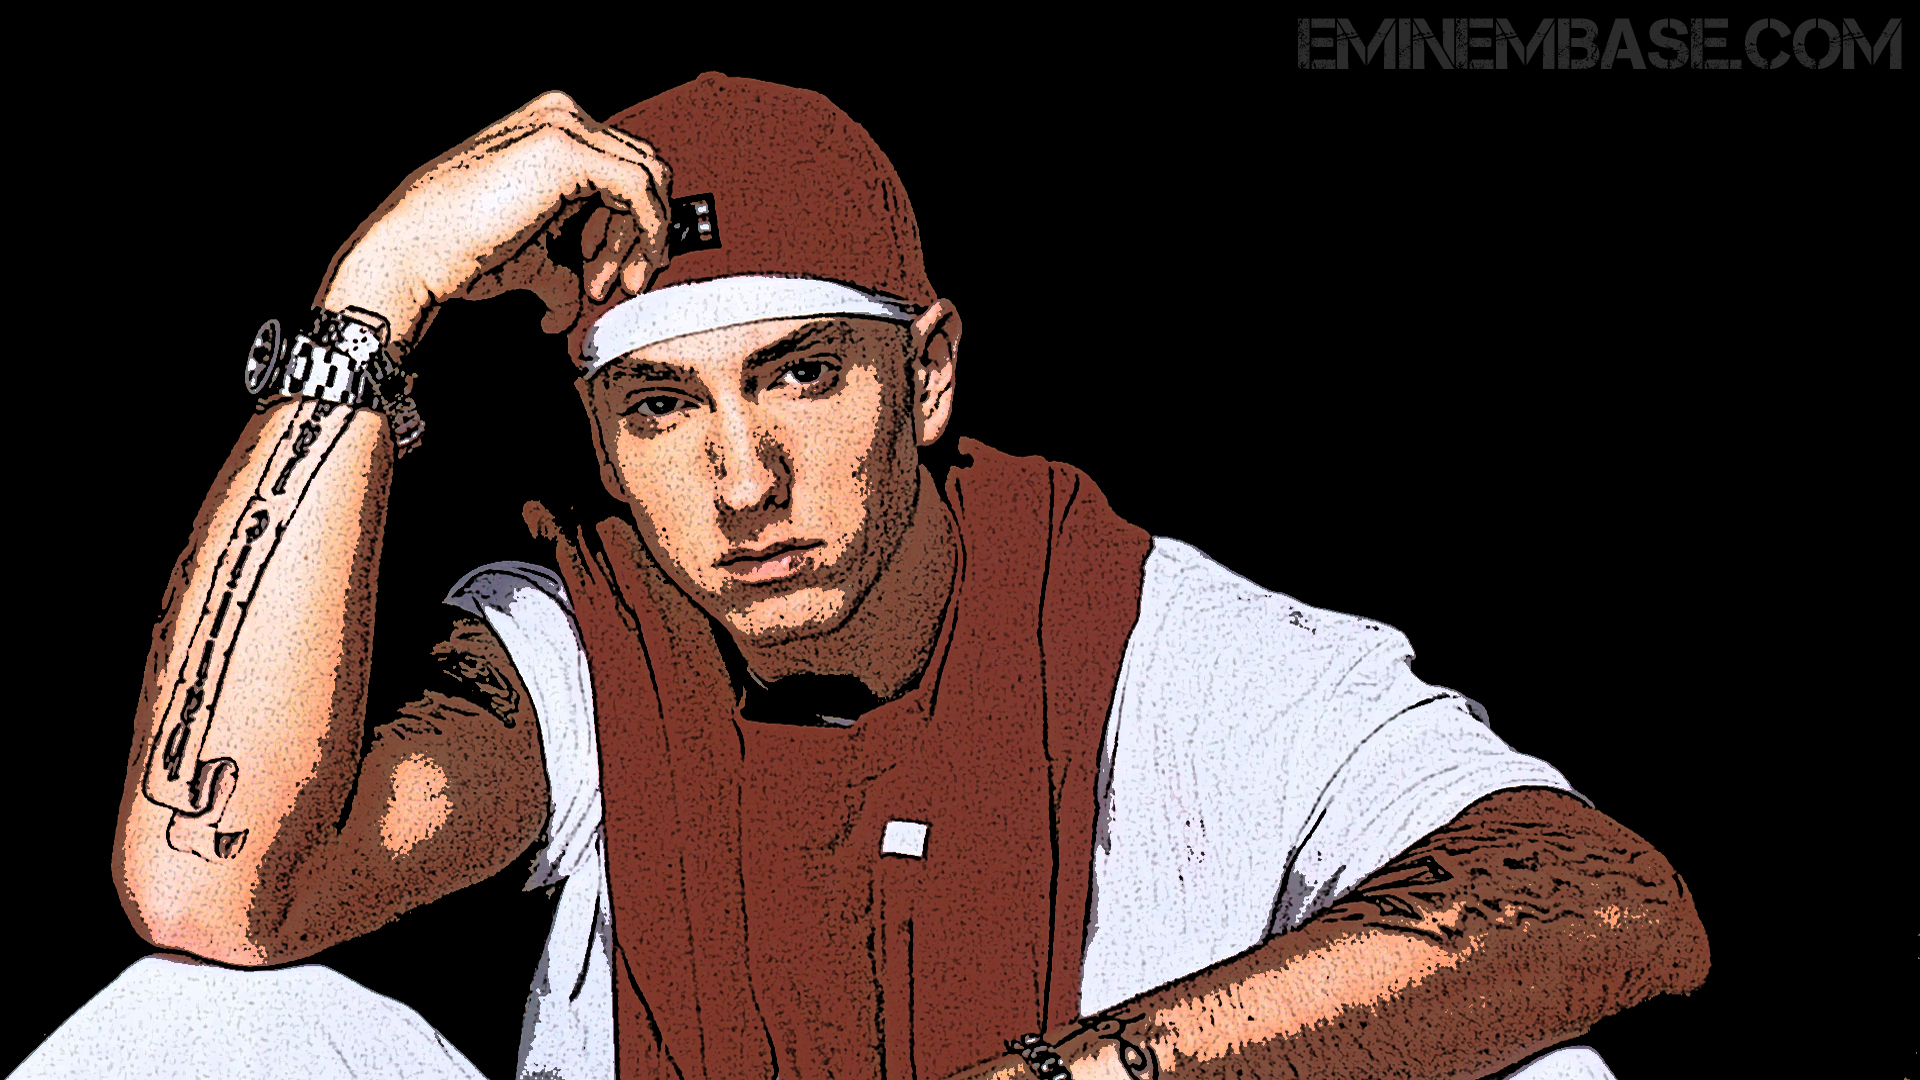 [76+] Eminem Wallpapers Hd on WallpaperSafari